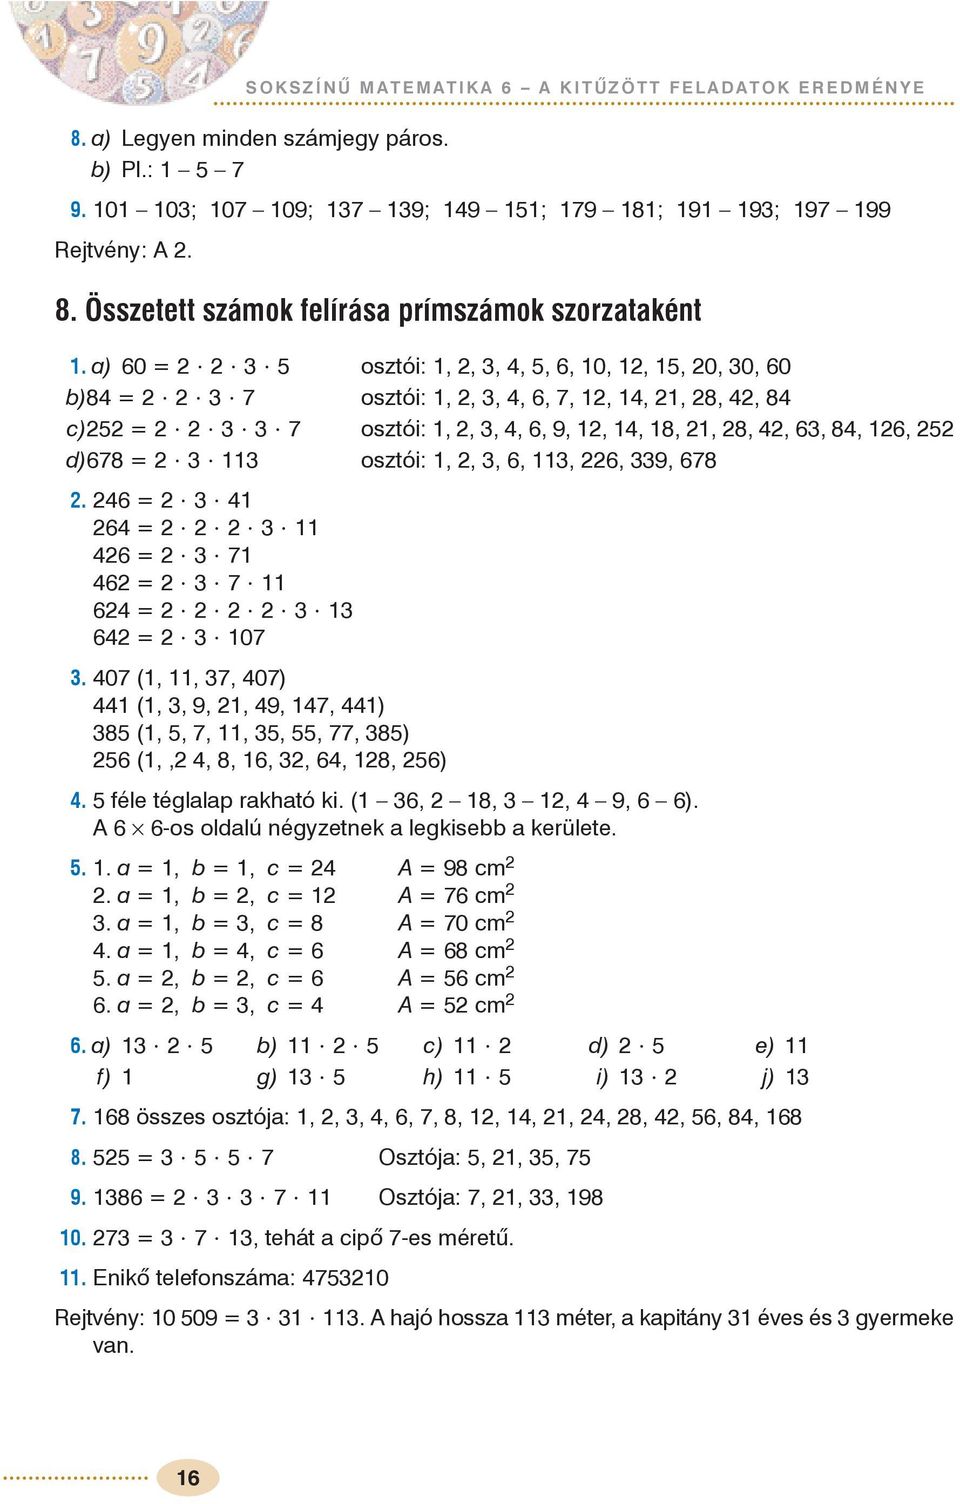 Sokszínû matematika 6. A KITÛZÖTT FELADATOK EREDMÉNYE - PDF Free Download